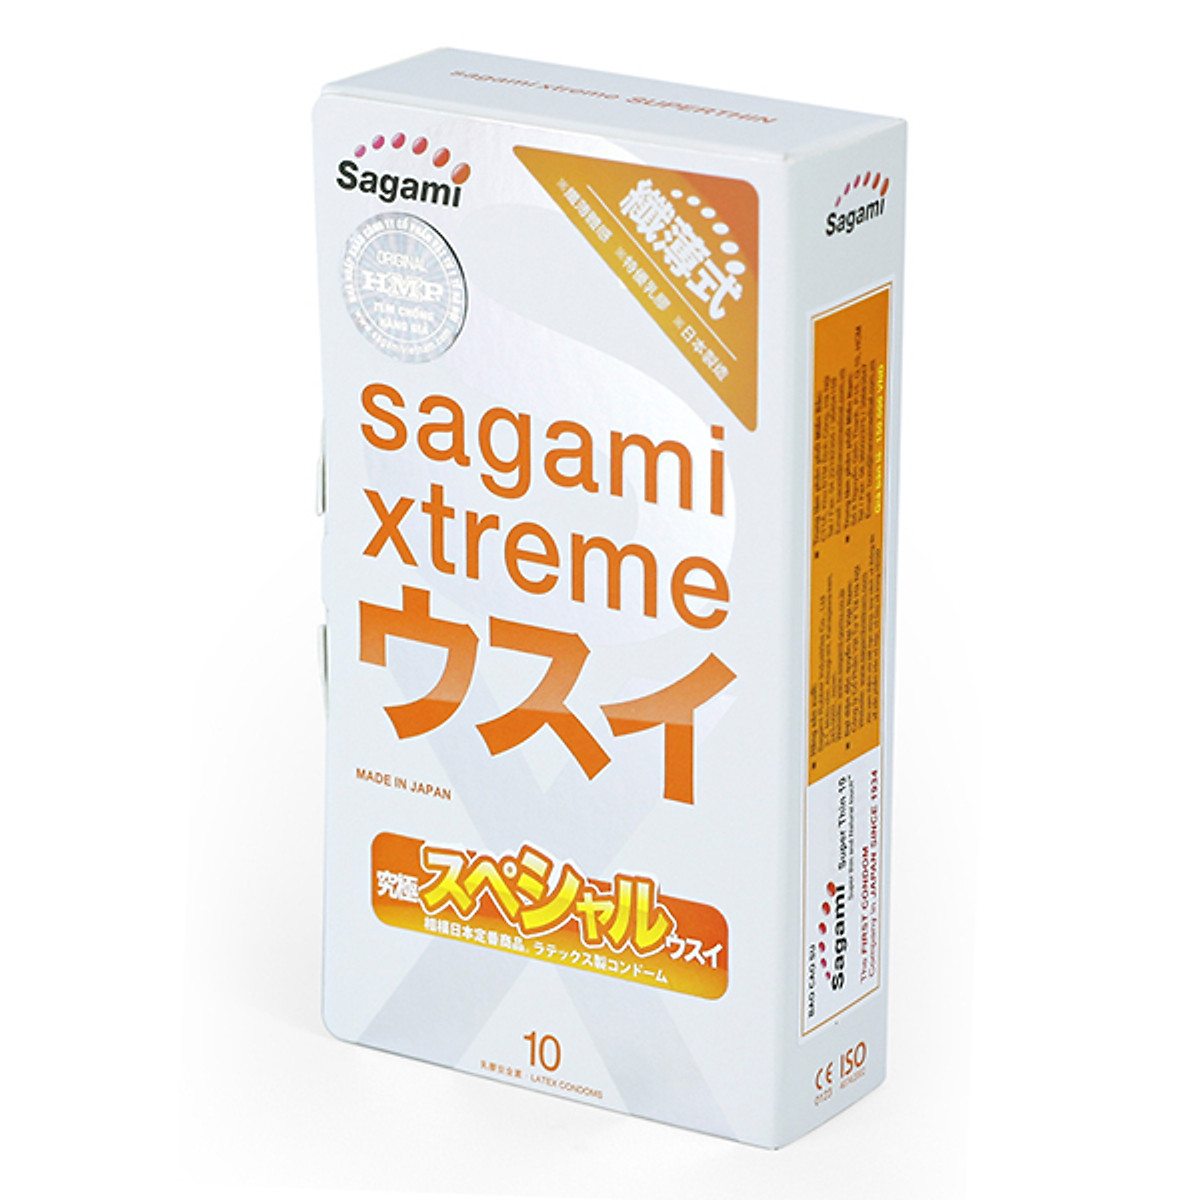 Bao Cao Su Sagami Xtreme Super Thin (10 Cái / Hộp)